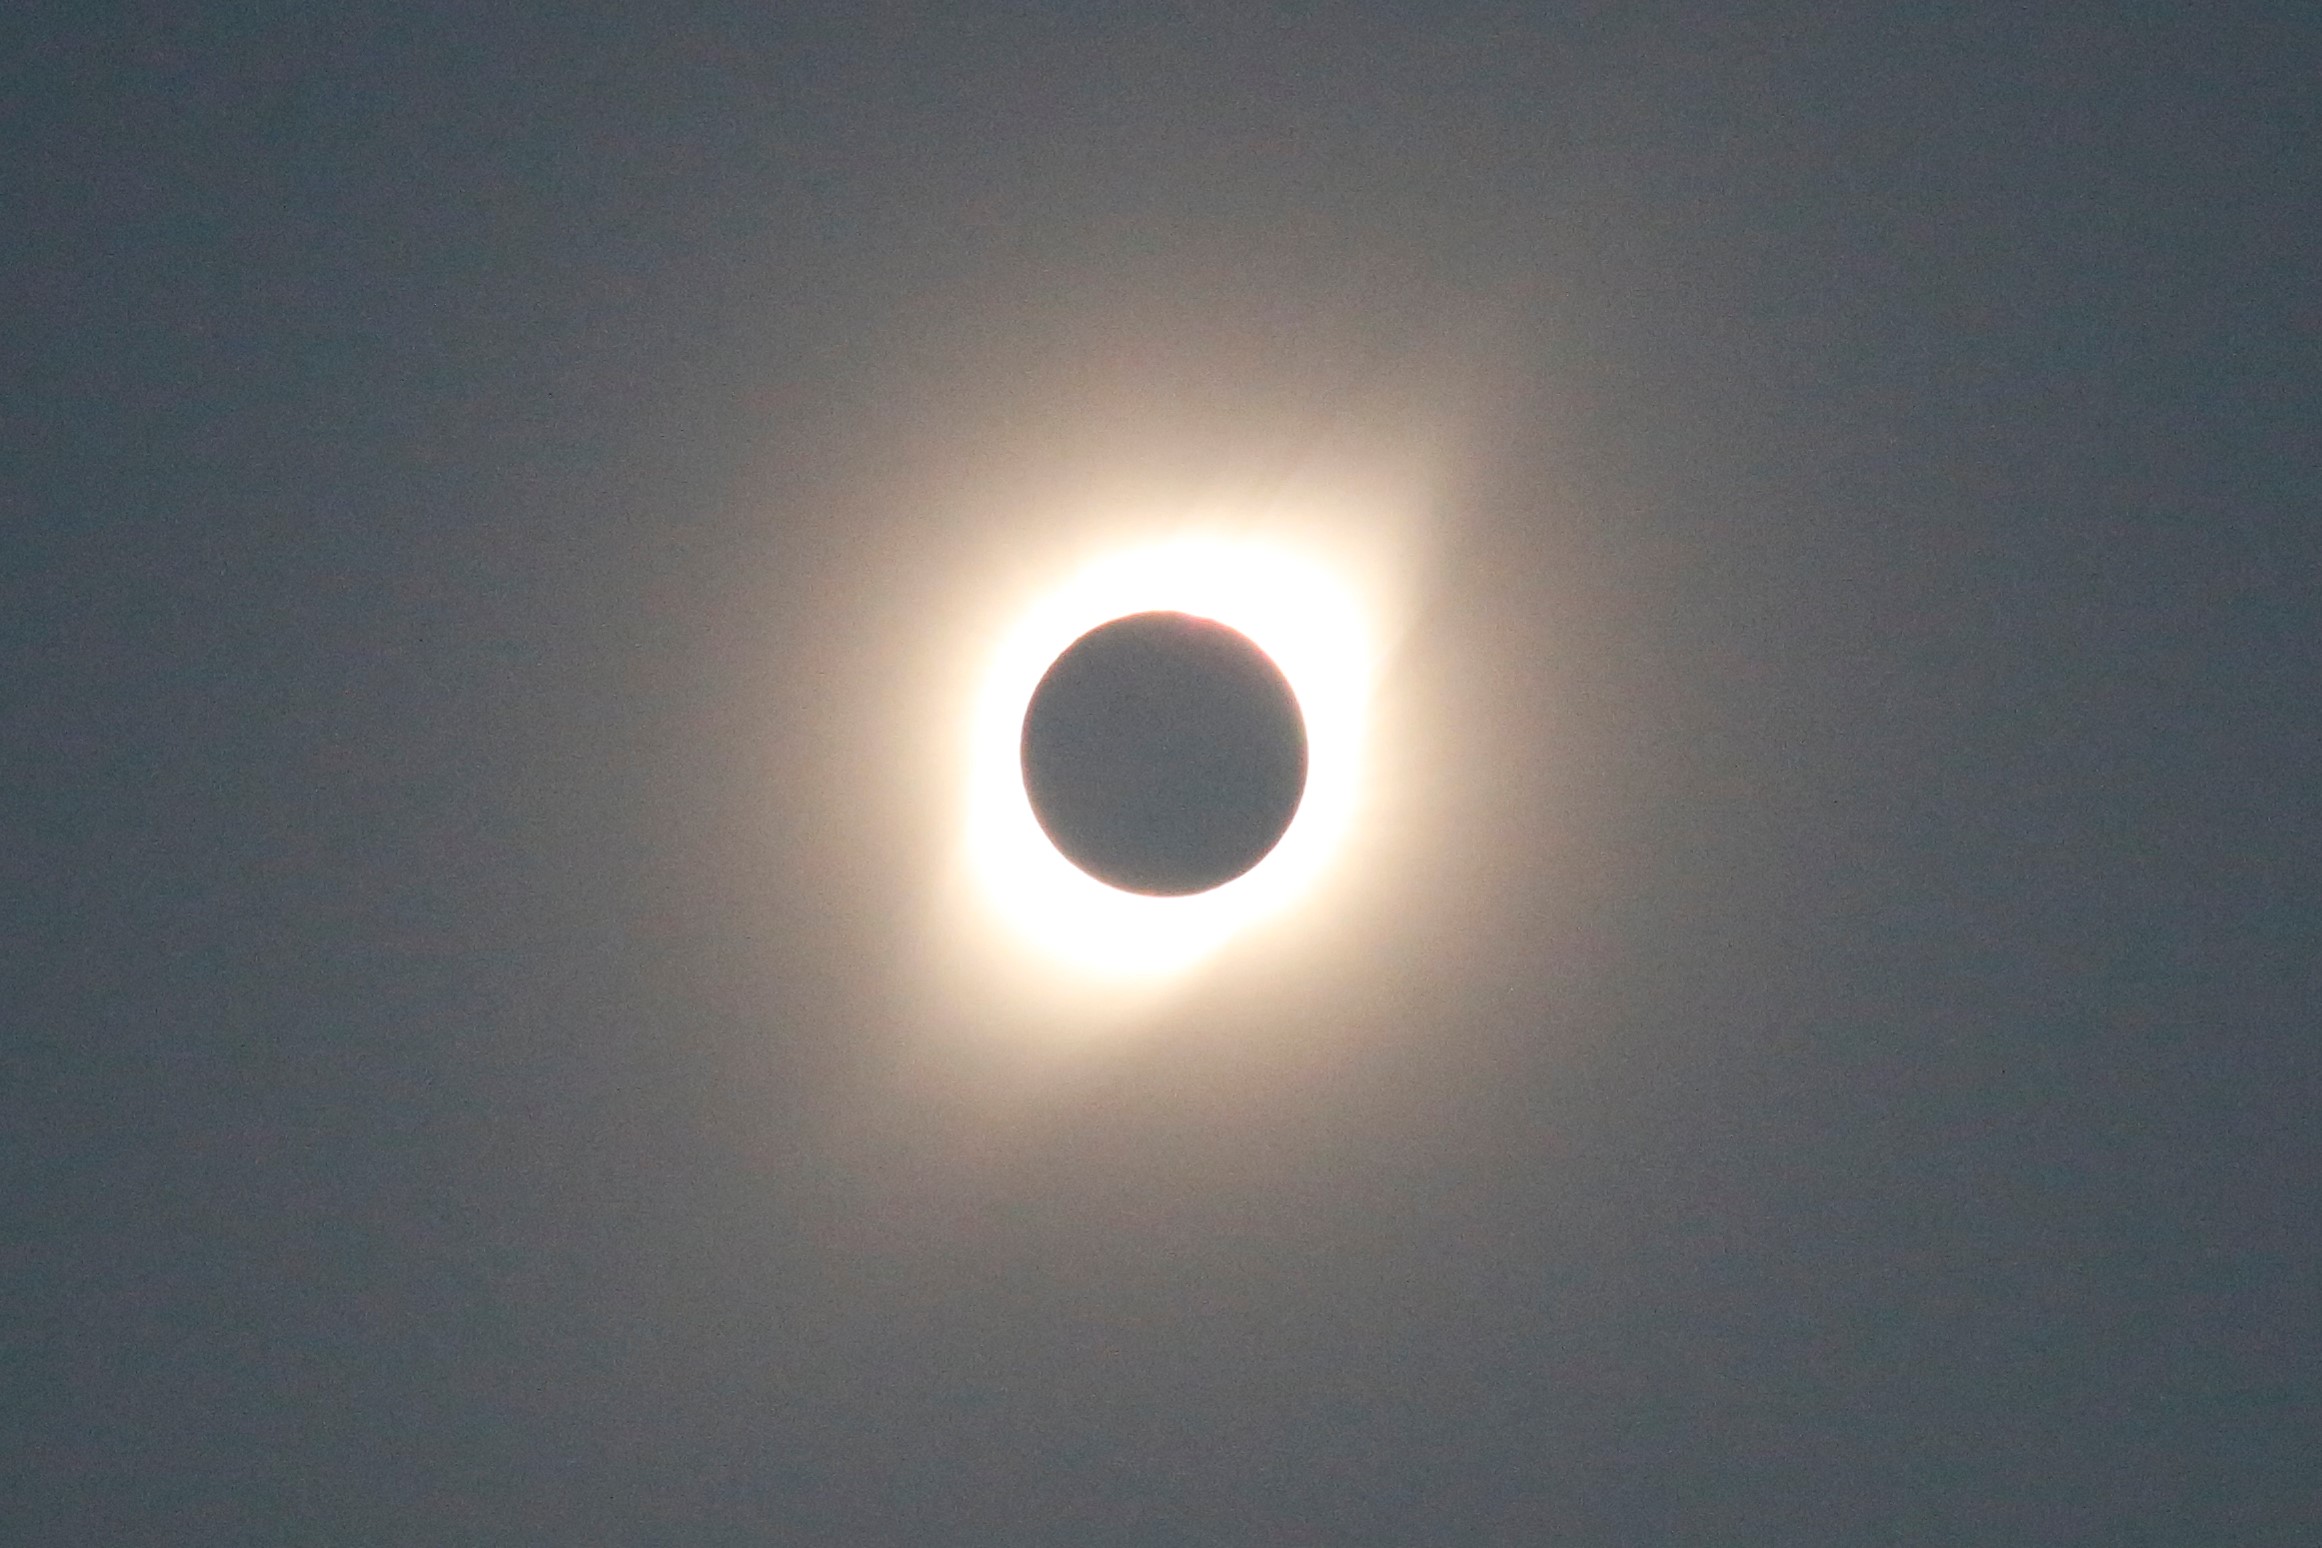 Solar Eclipse in Chile 2019